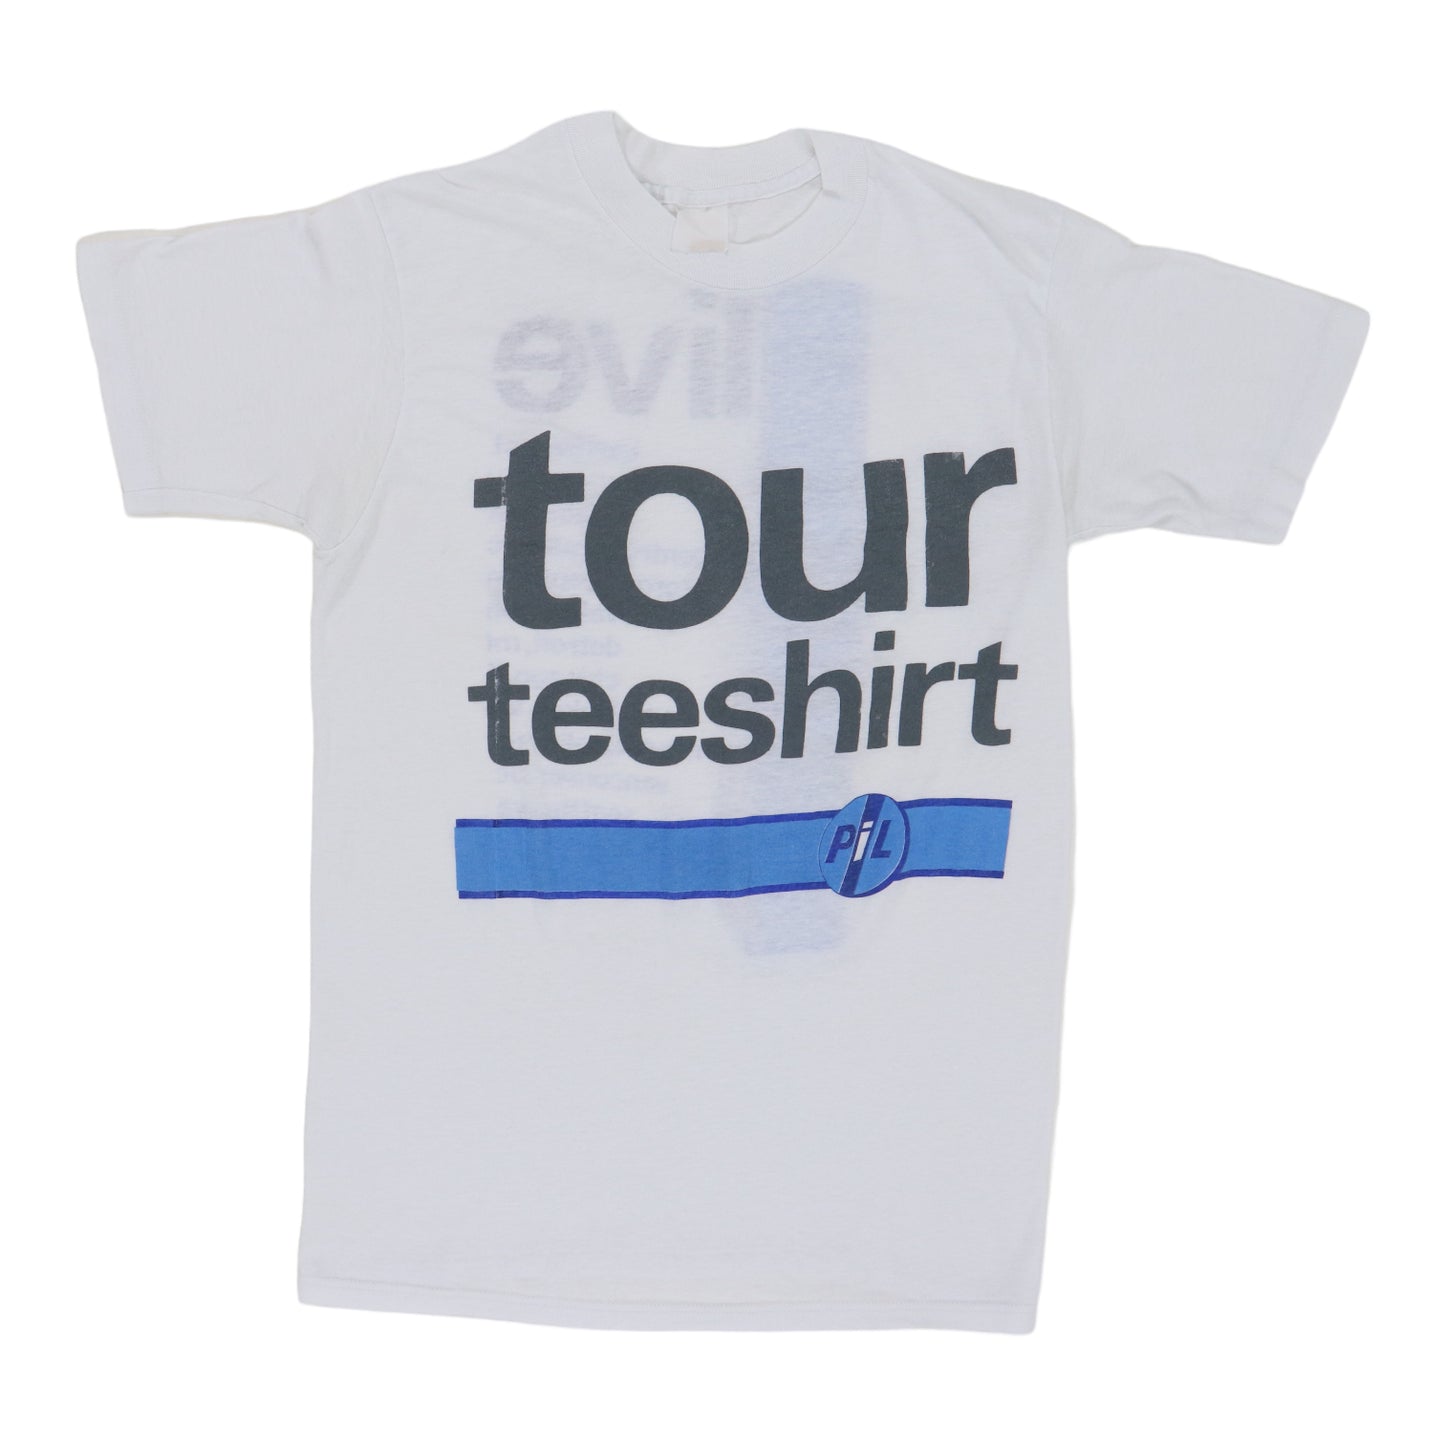 1986 Pil Tour Teeshirt Shirt